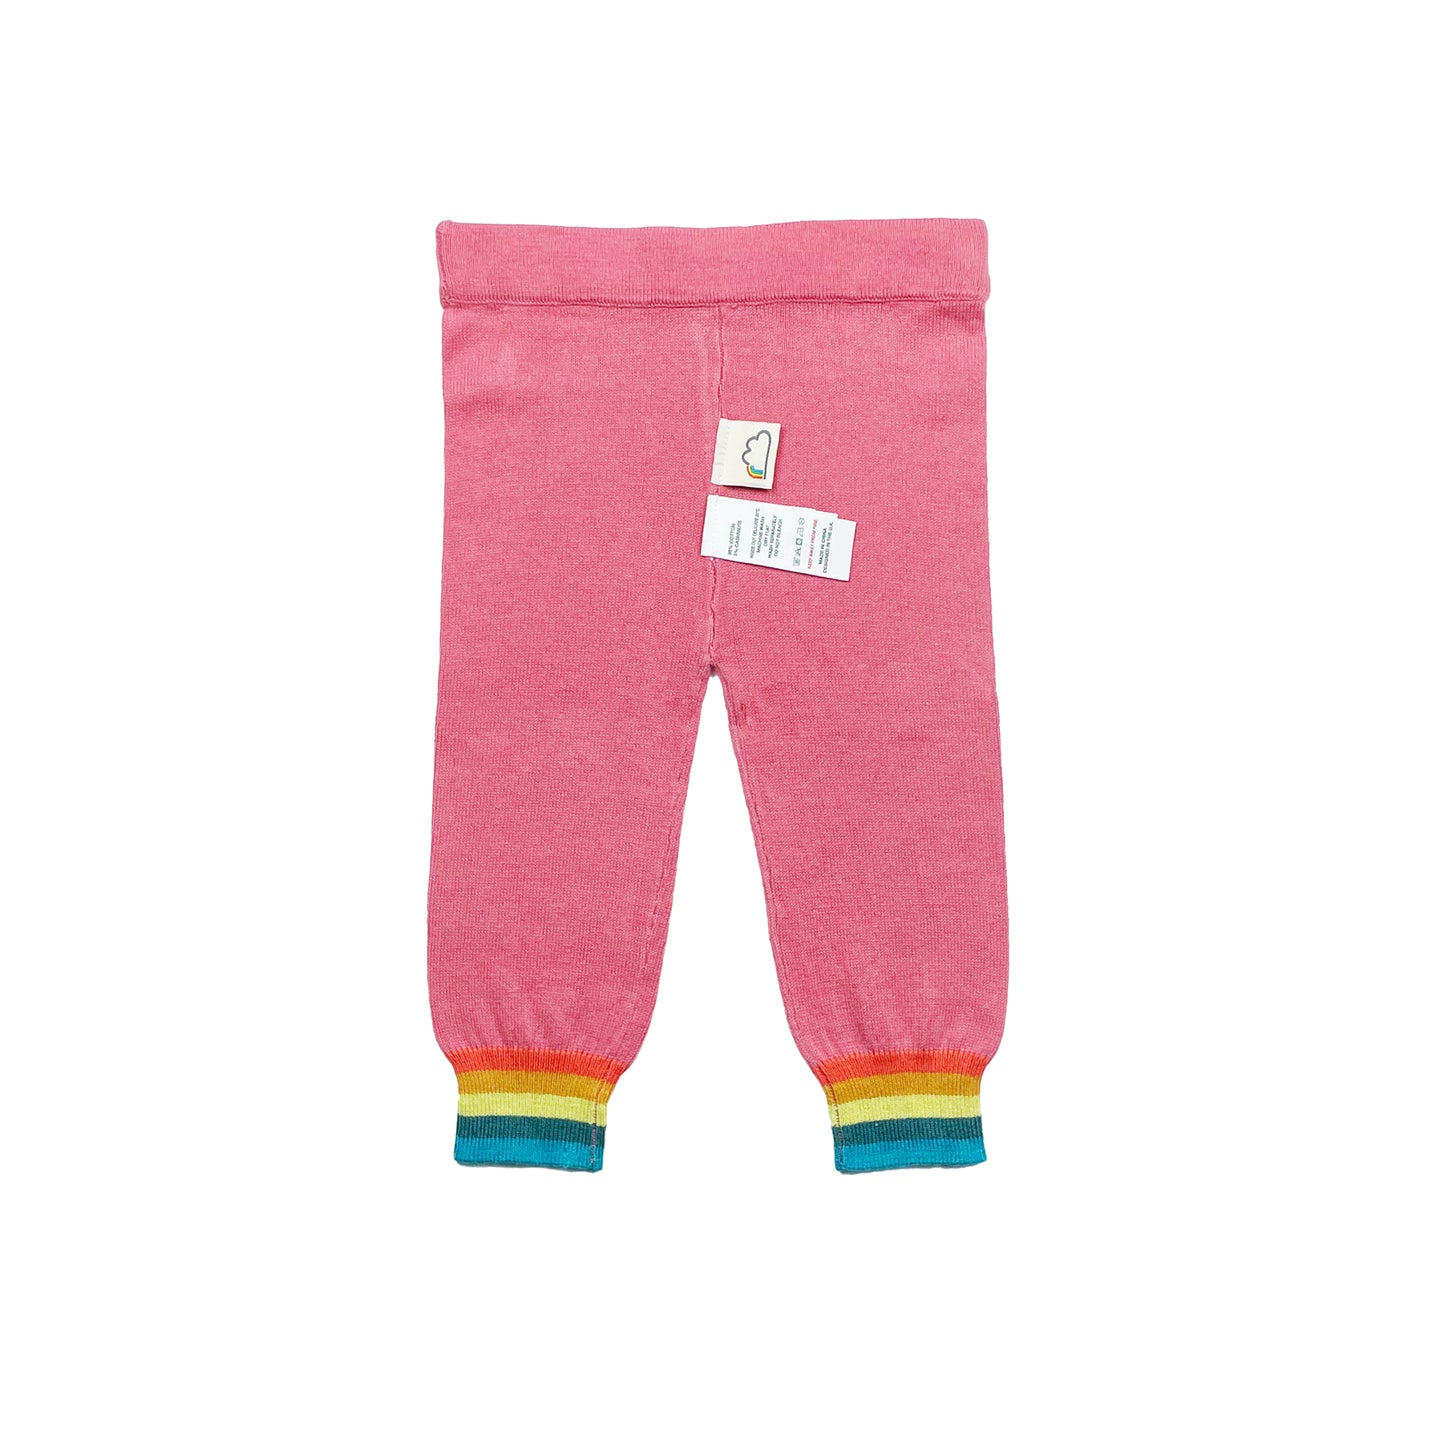 嬰兒服裝 - 桃紅色羊絨混棉針織長褲